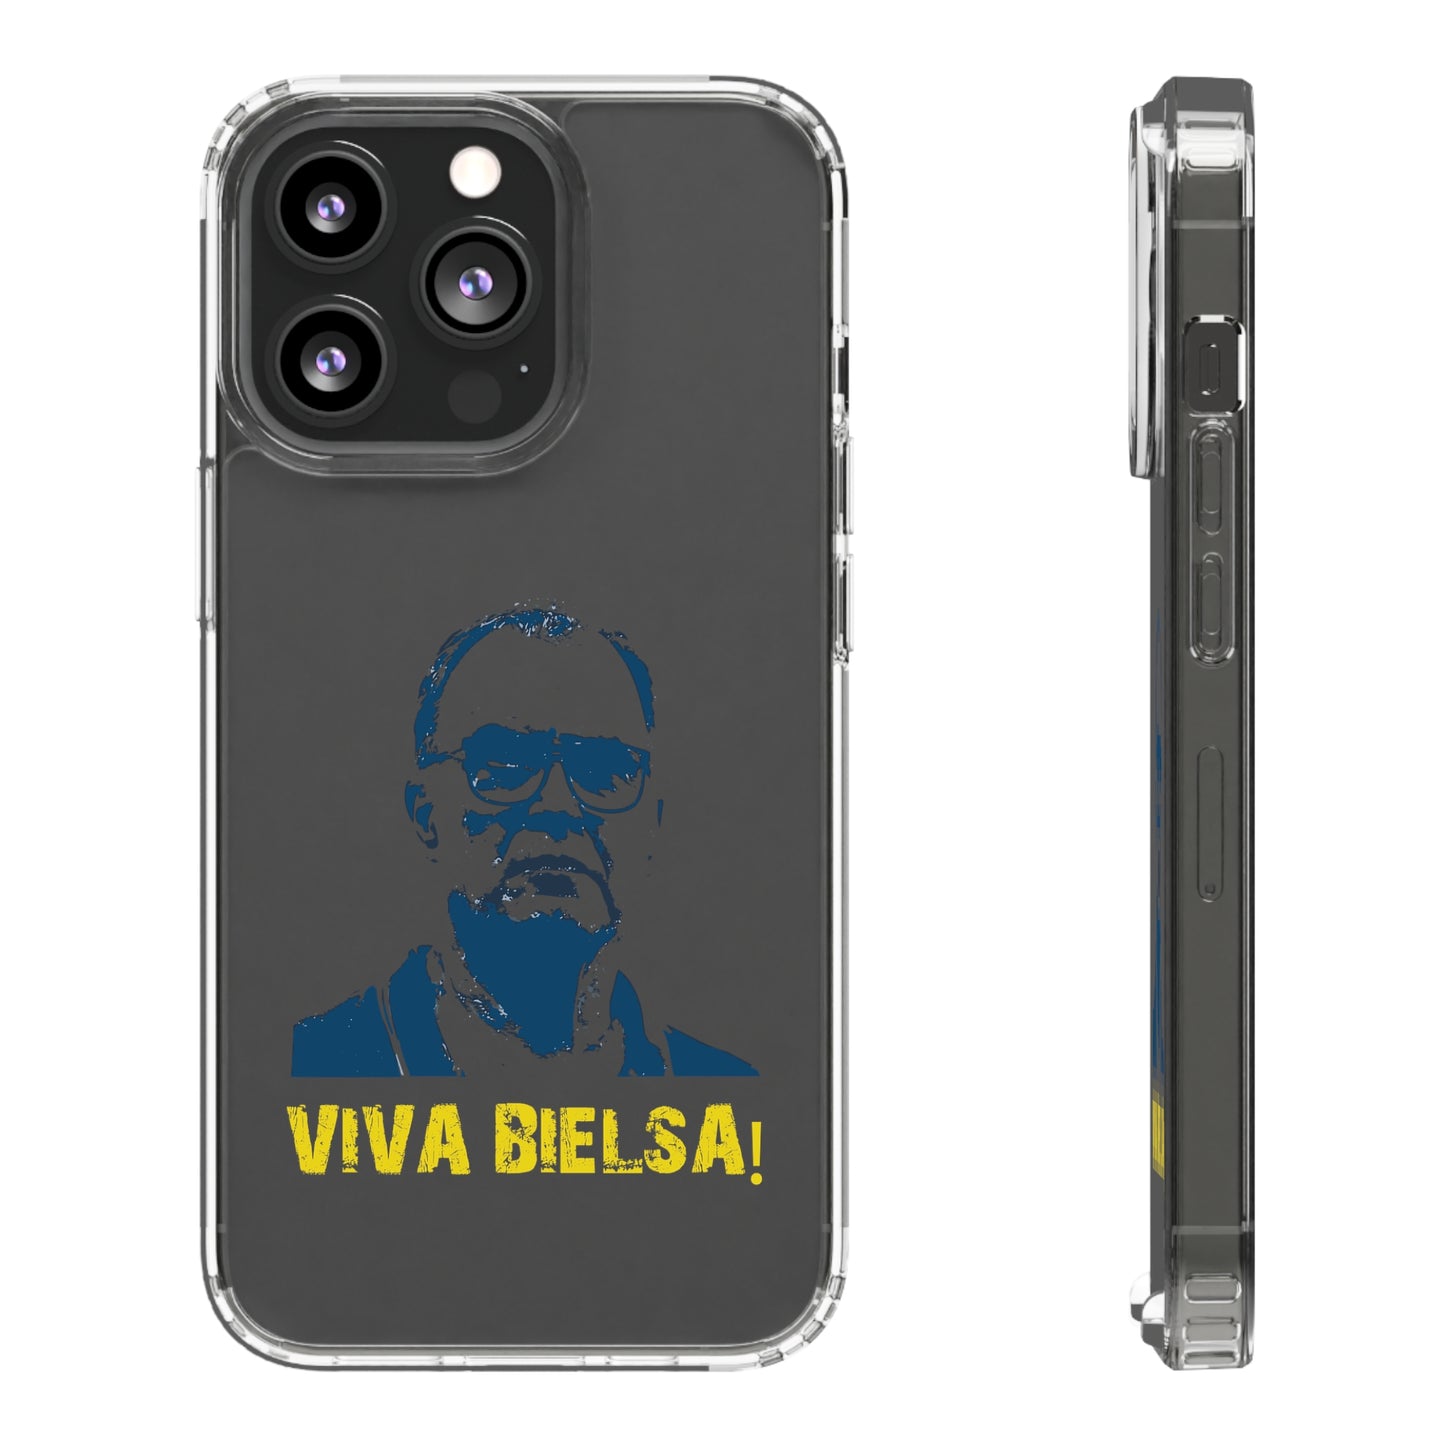 Genomskinligt telefonfodral - Viva Bielsa!